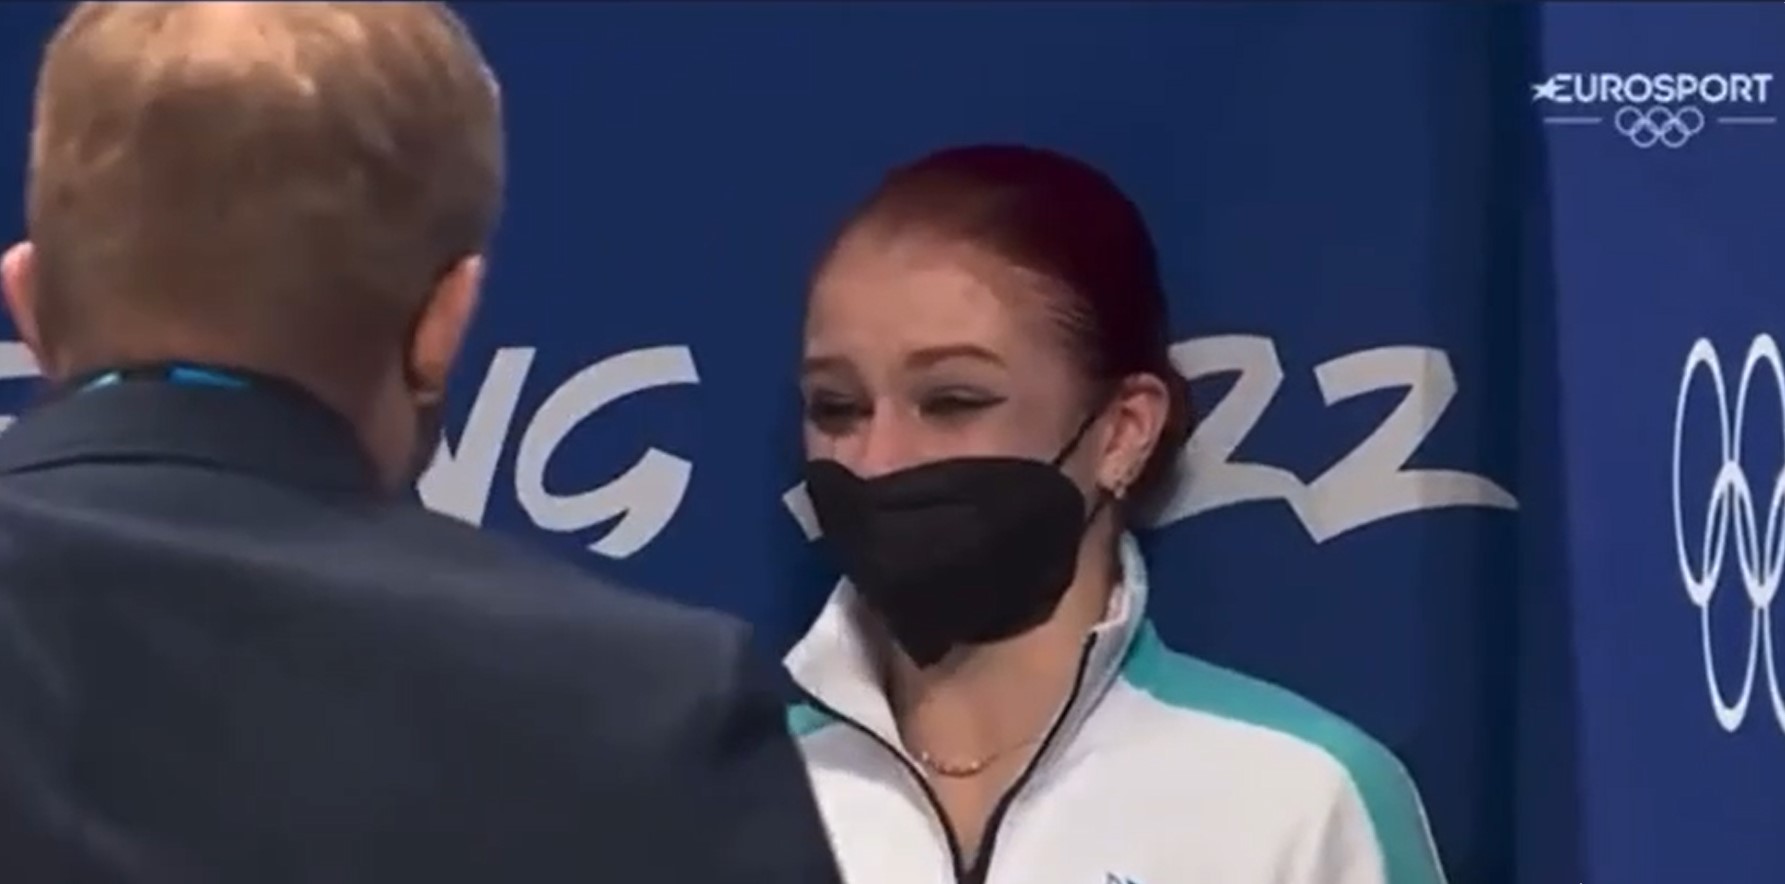 Расстроенная Александра Трусова устроила истерику перед награждением на Олимпийских играх в Пекине